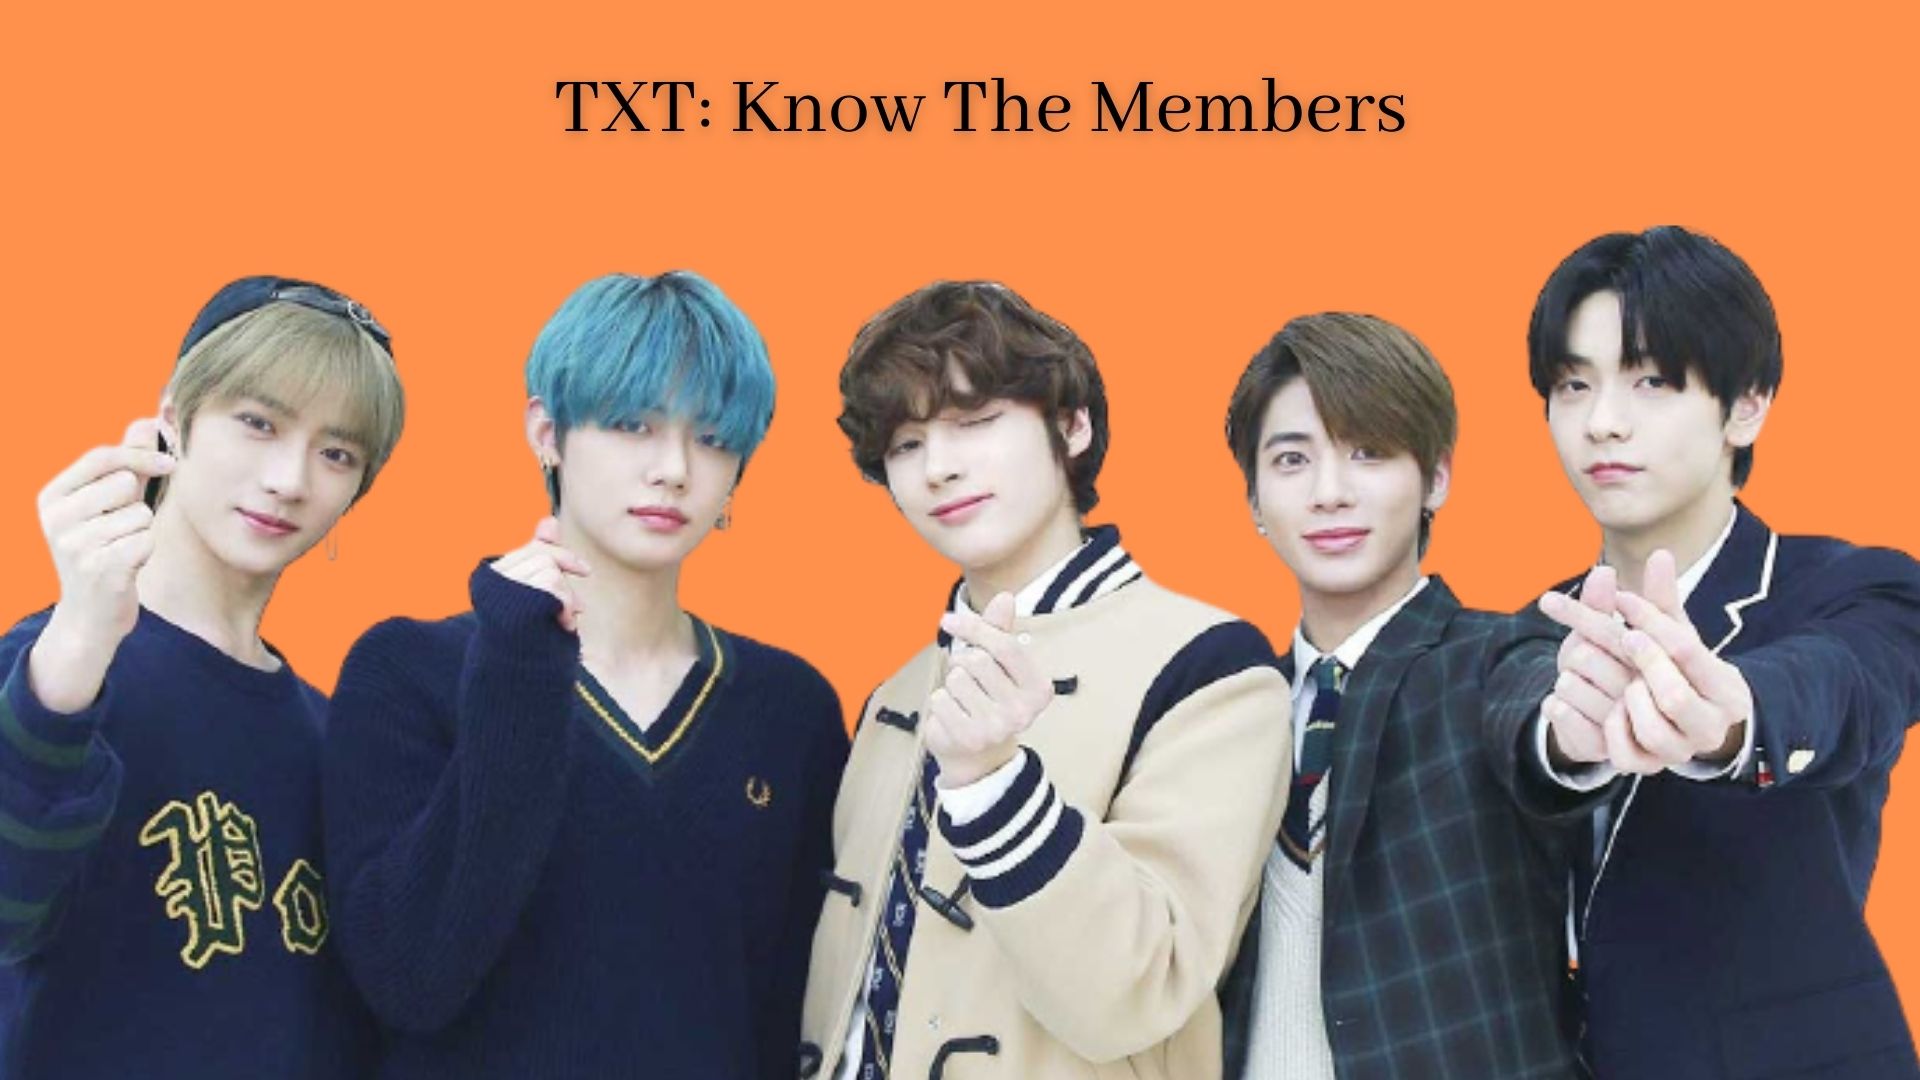 Txt members